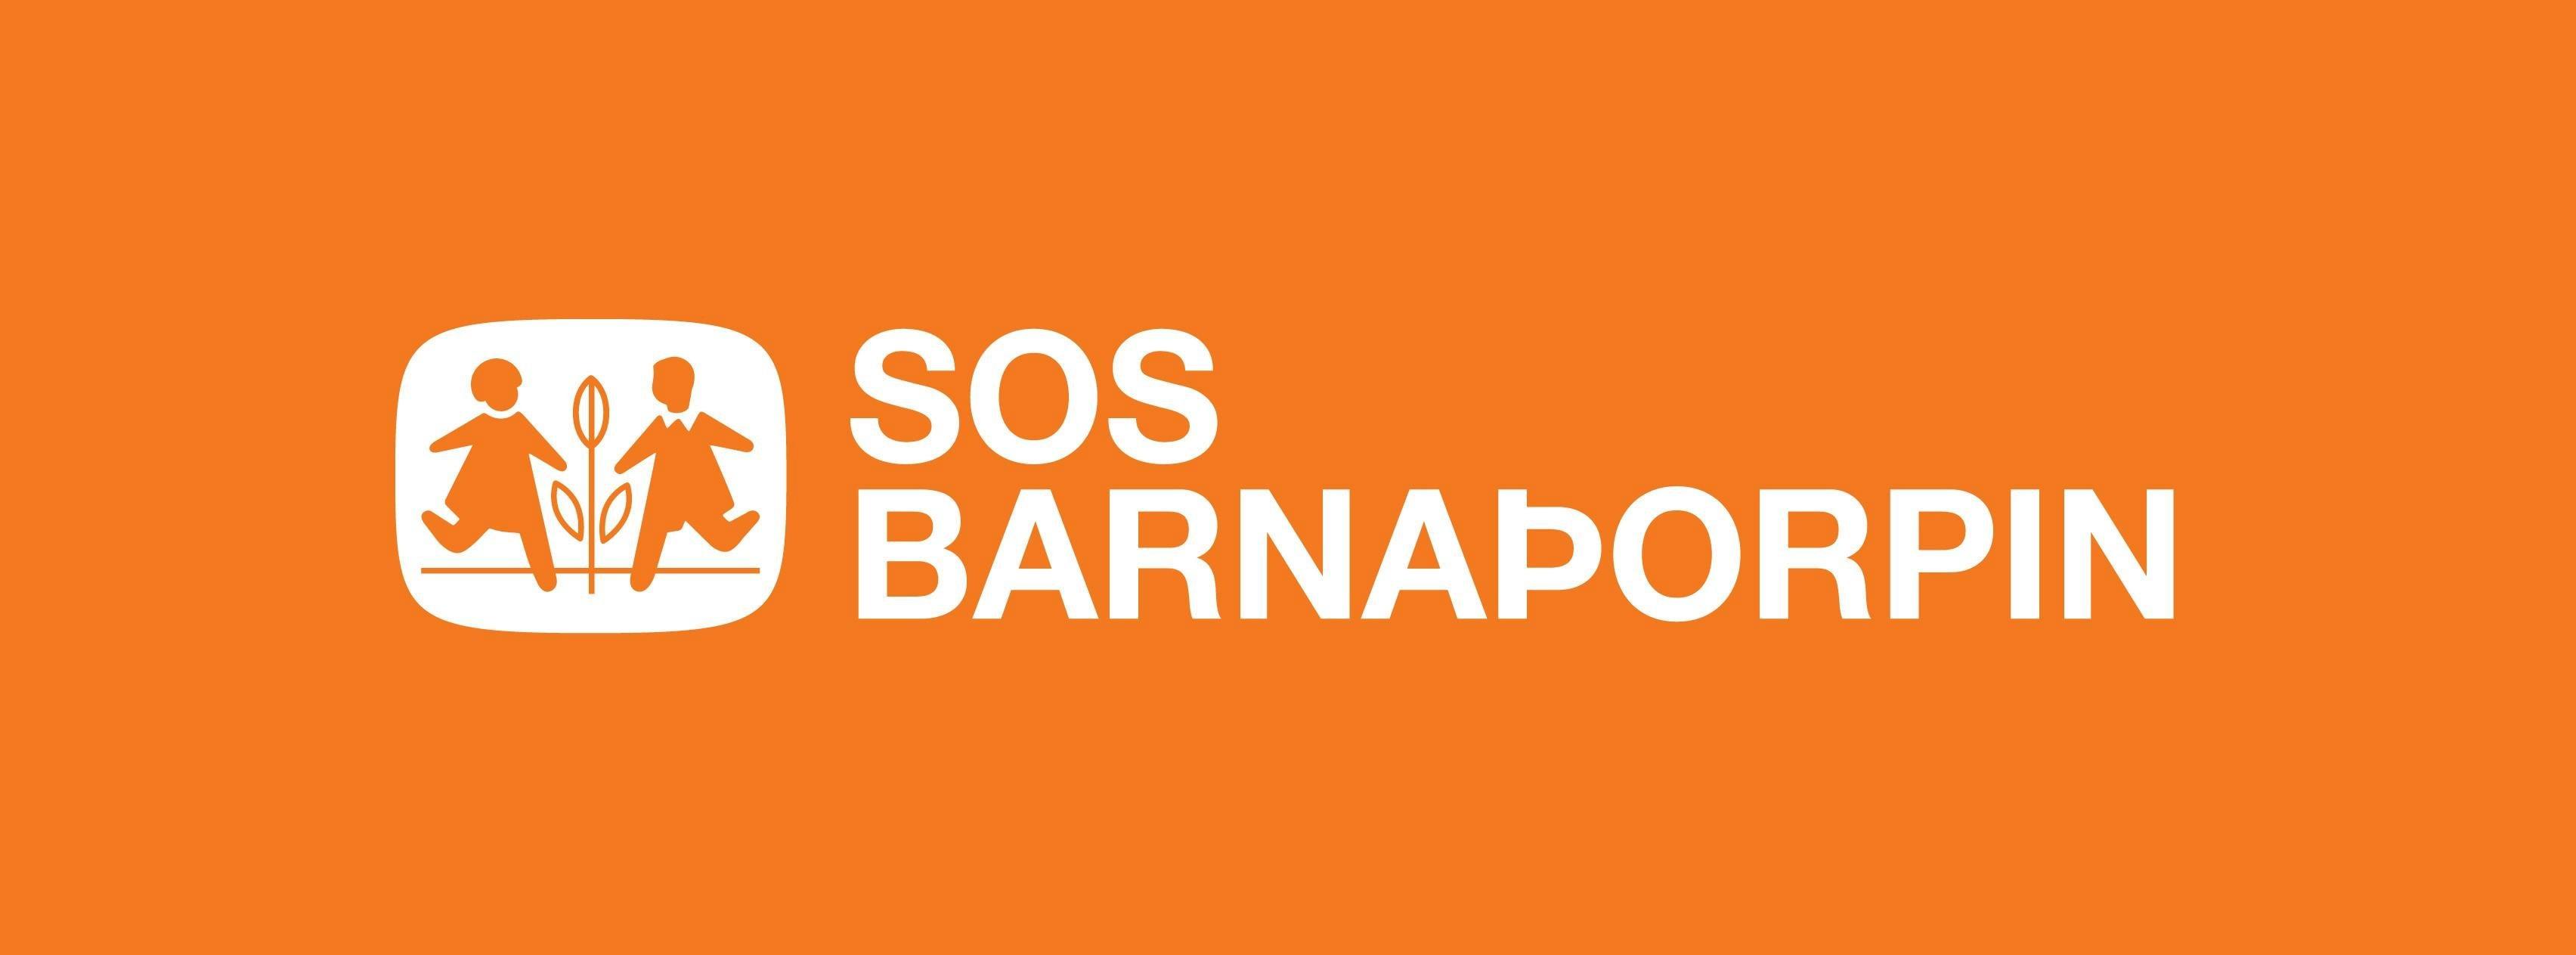 SOS Barnaþorpin